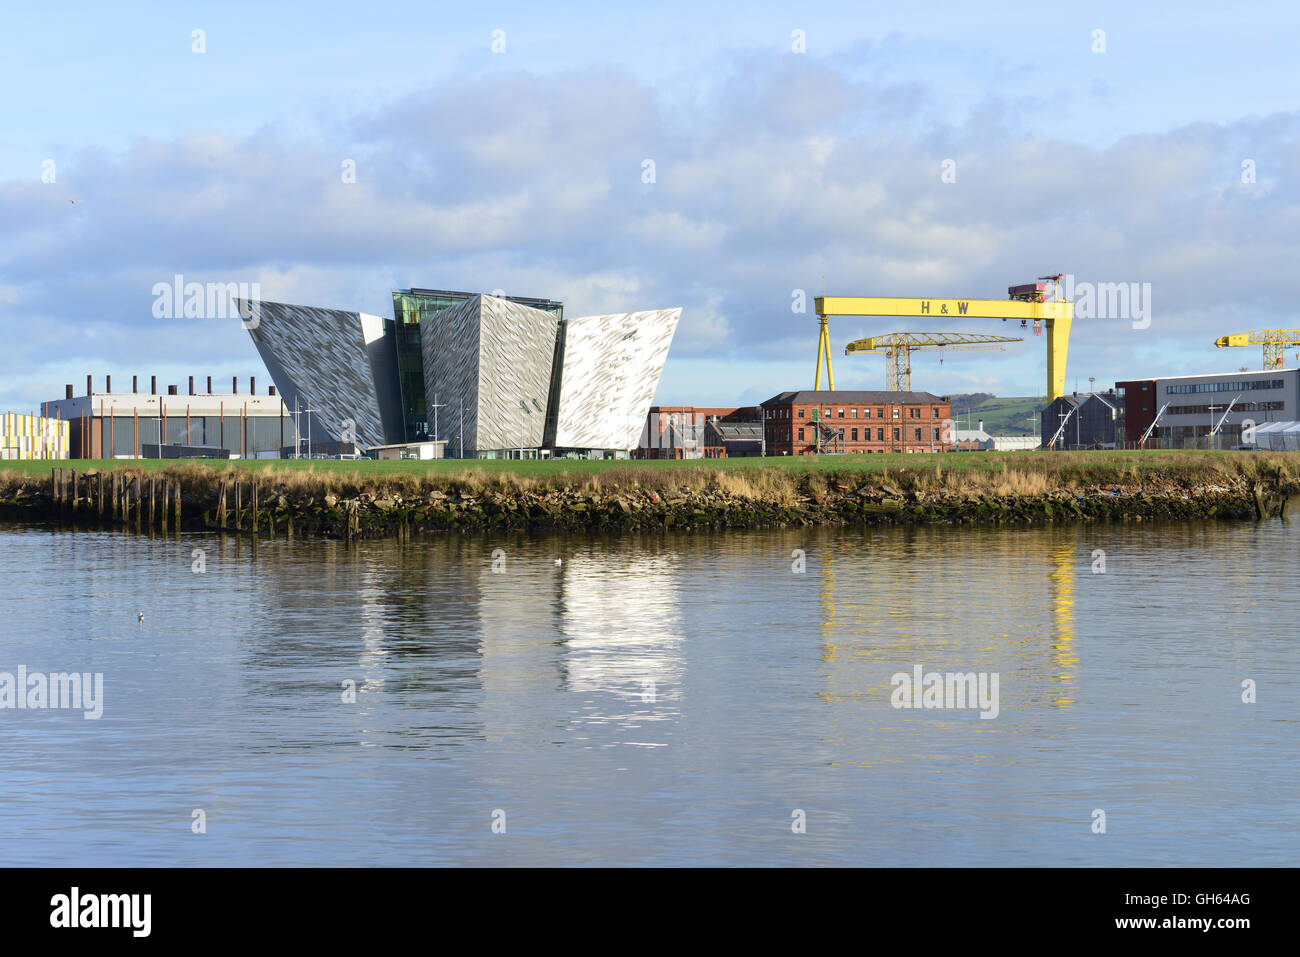 Vue sur le bâtiment Titanic avec les grues Harland et Wolff, Belfast Banque D'Images